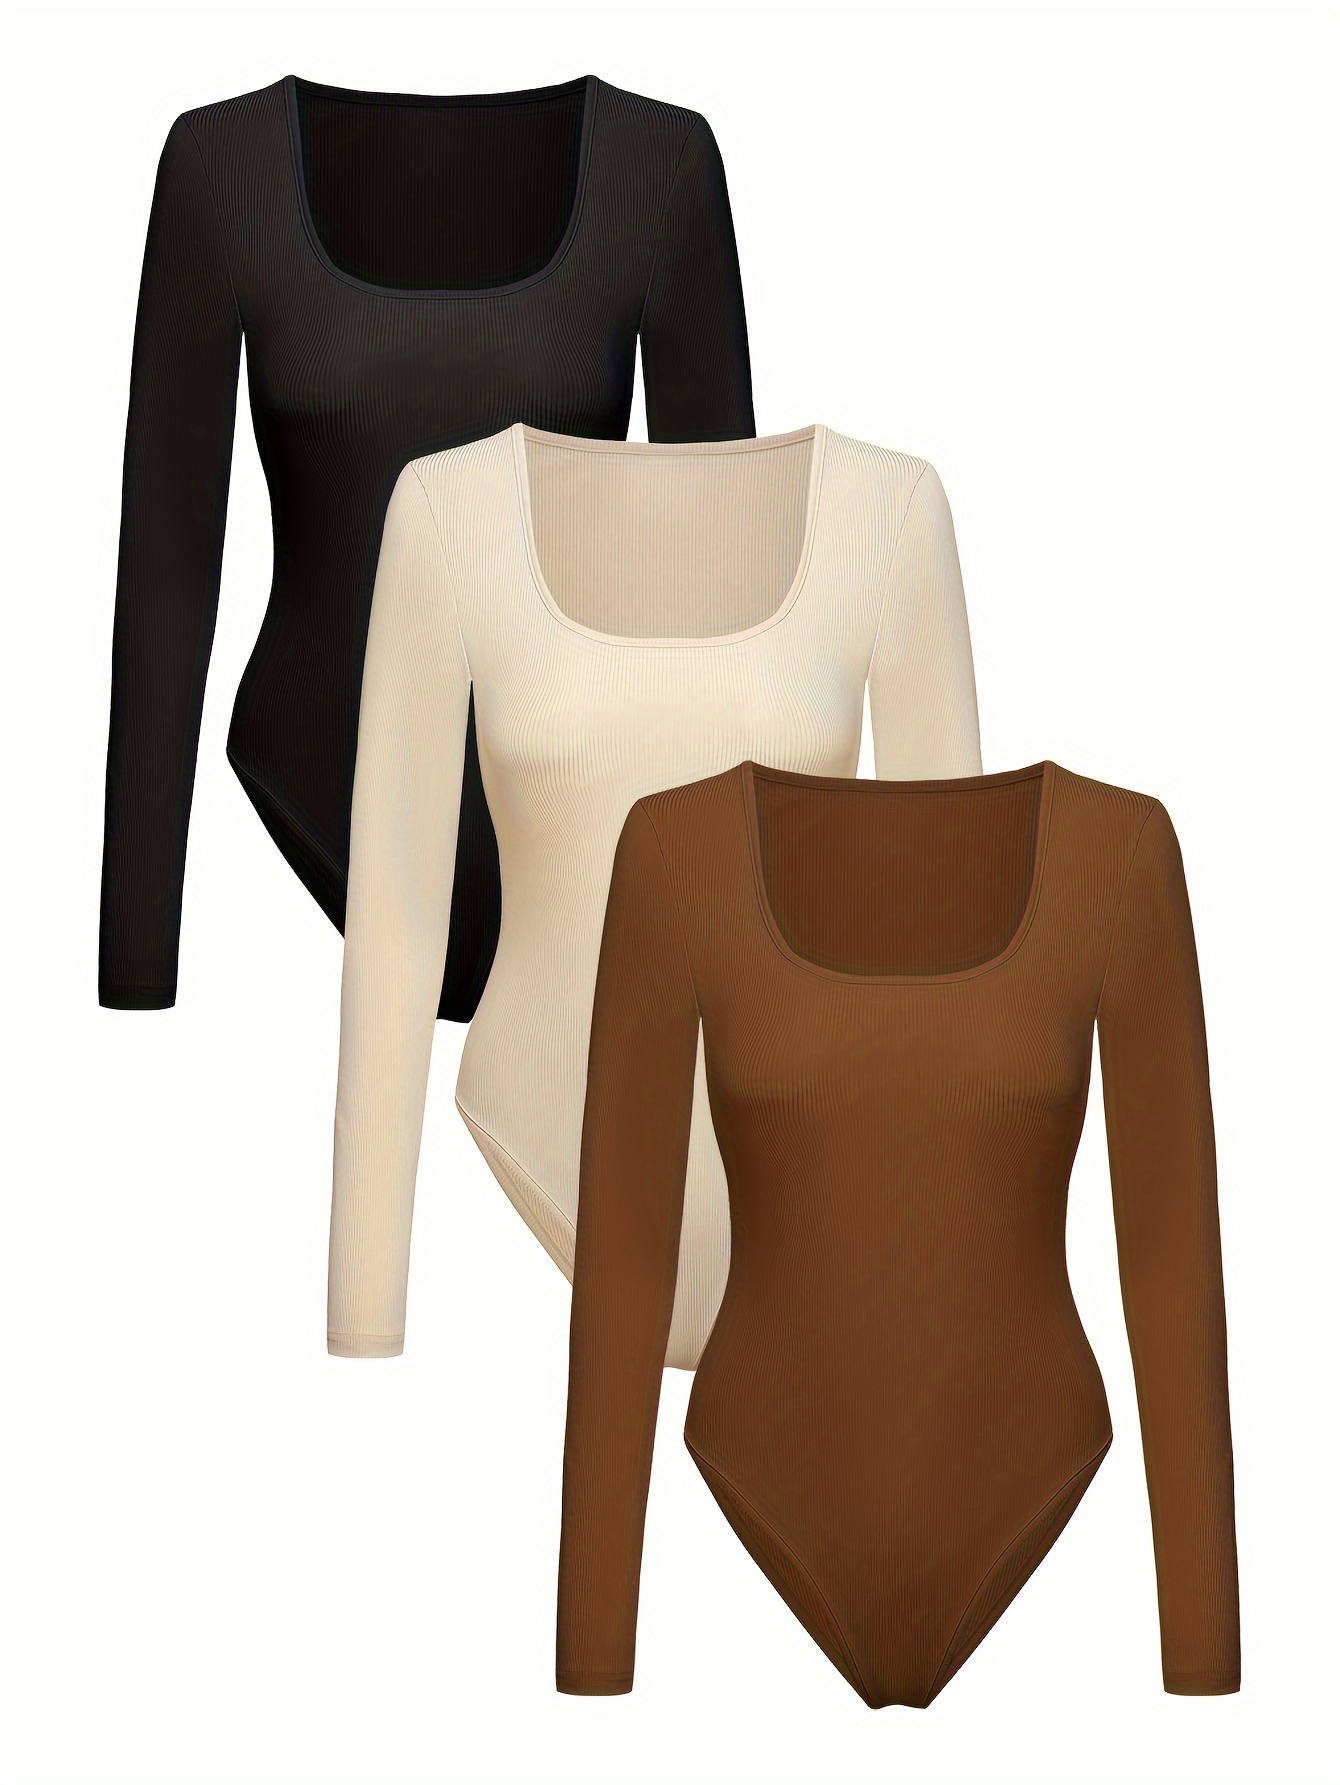 Long Sleeve Round Neck Bodysuit Tops for Women- 2PK Black/Skin XL